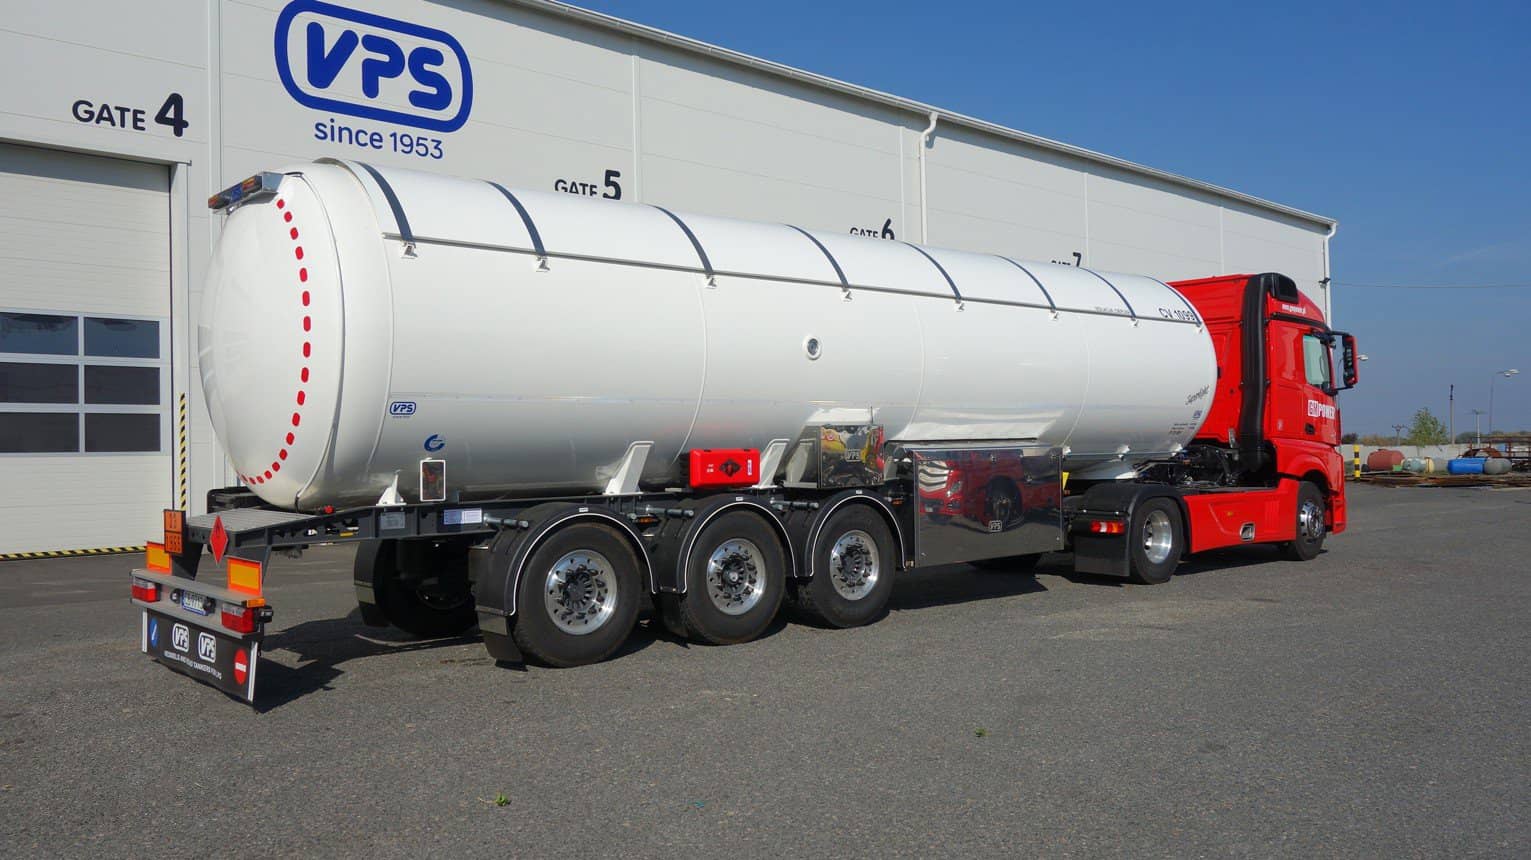 VPS Tank Trucks LPG